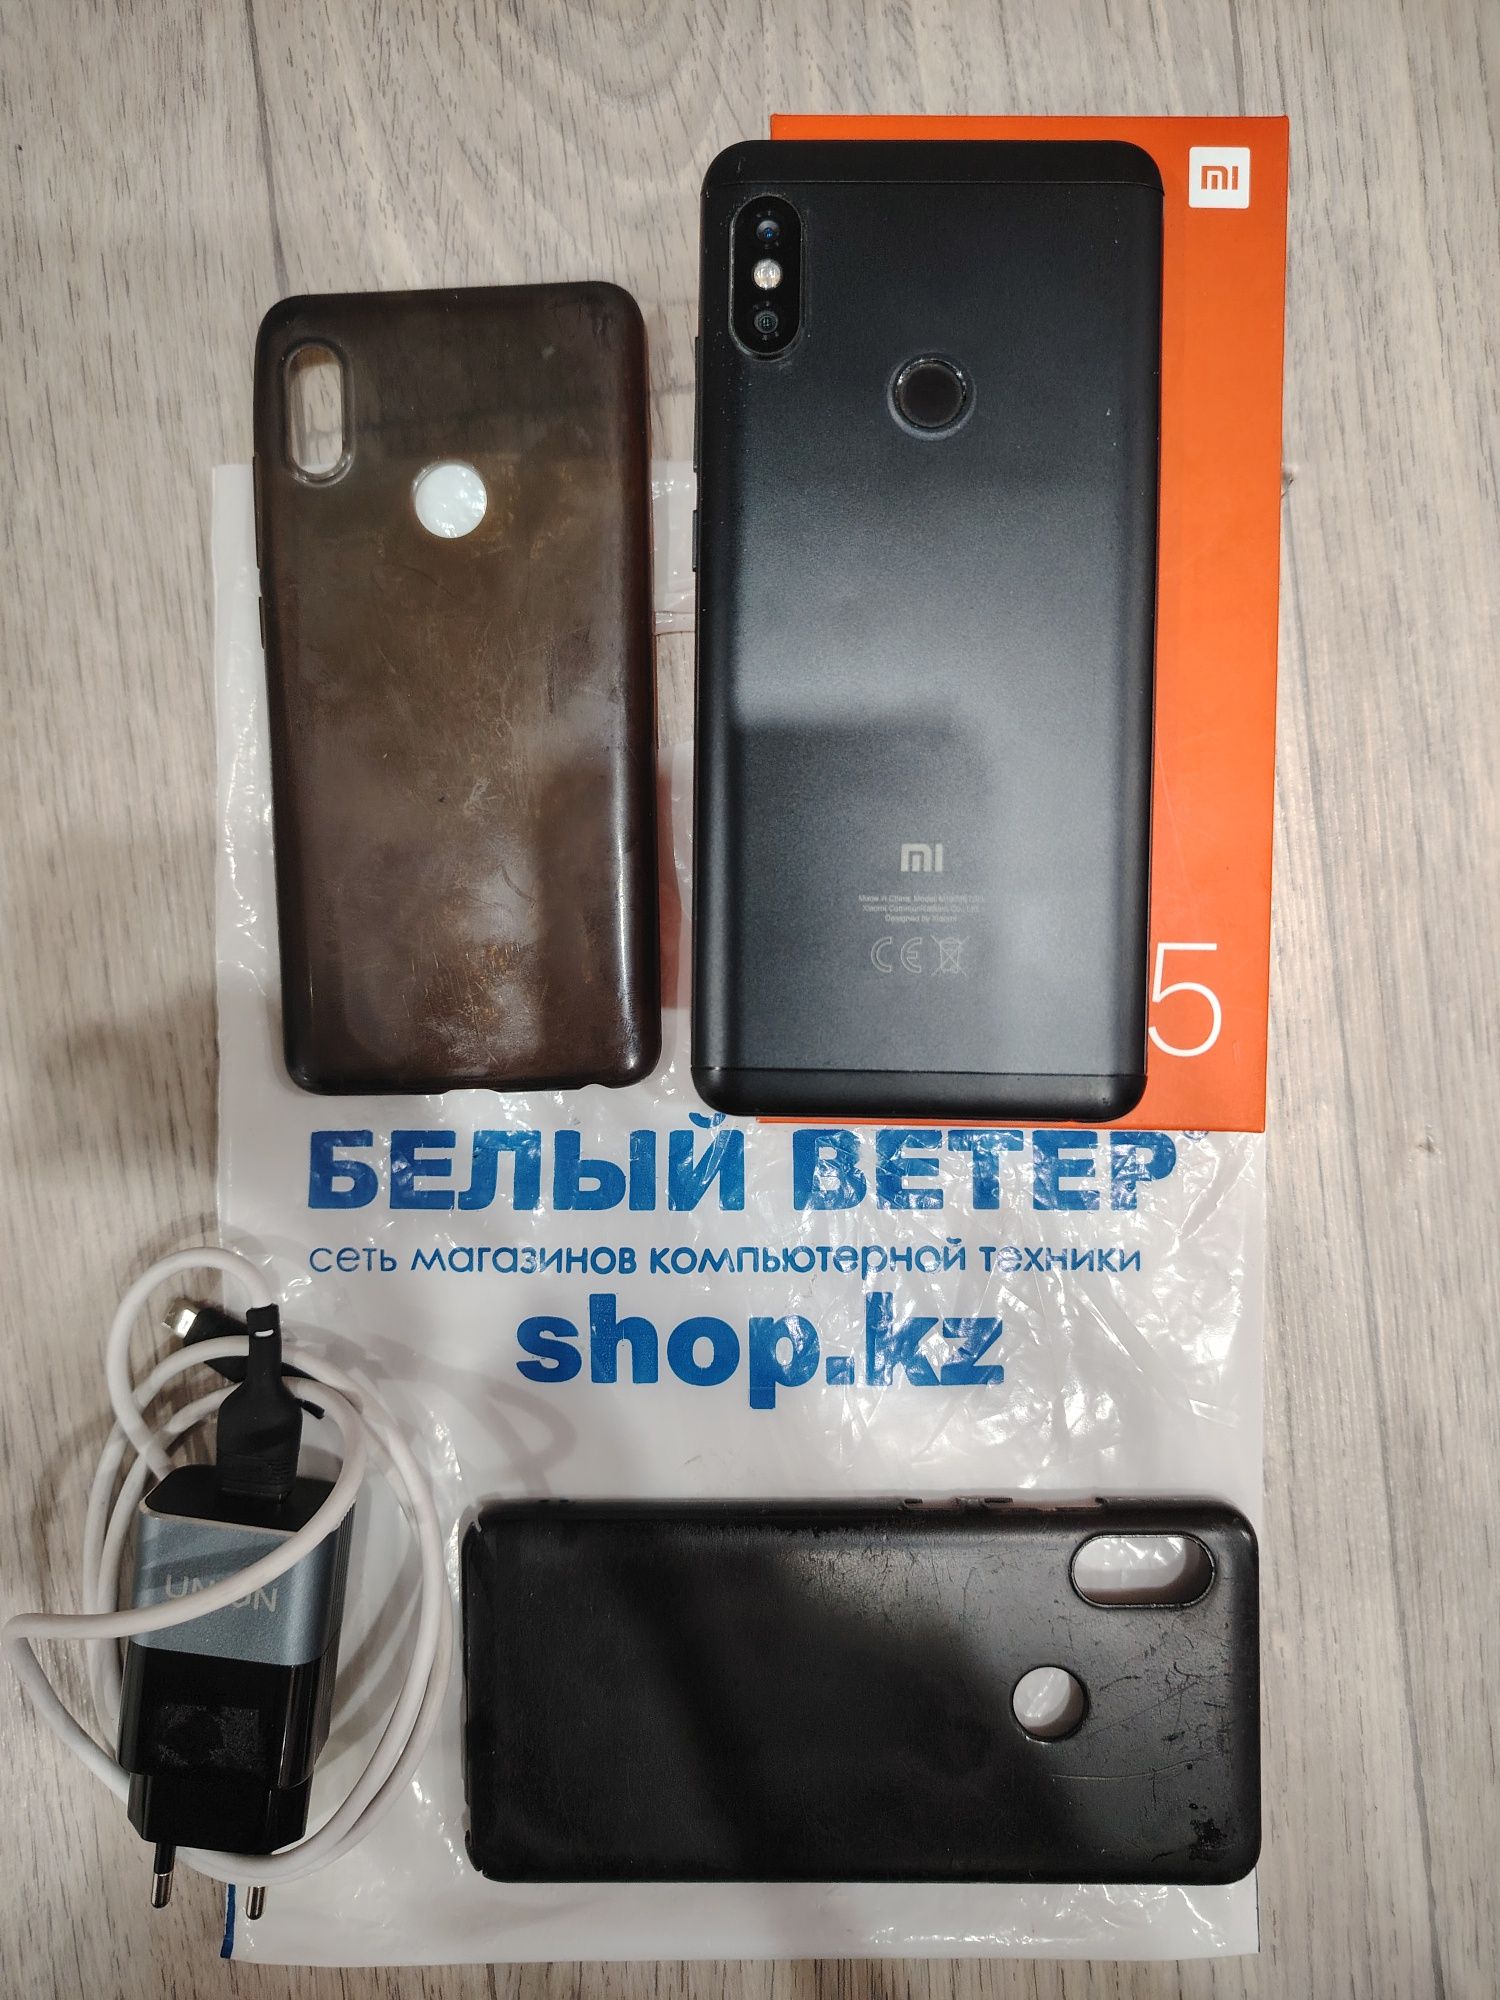 Xiaomi Redmi Note 5 4/64 Gb Black